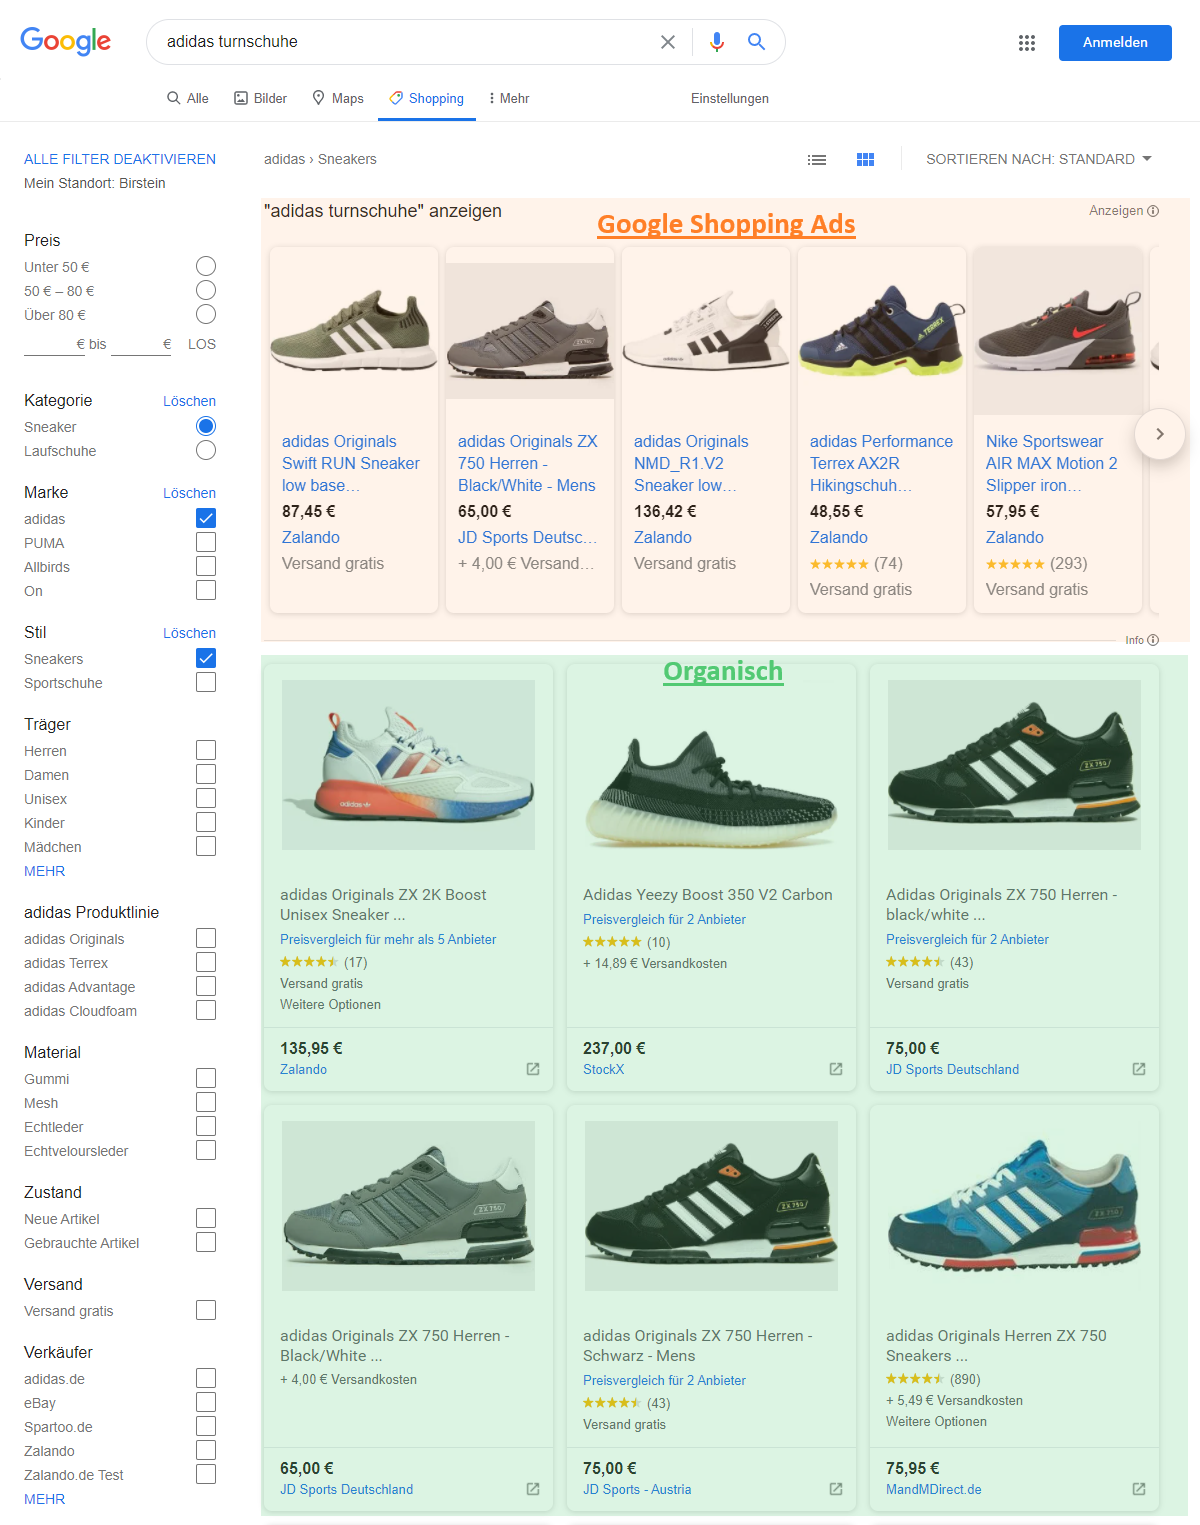 Abbildung 1: Neue Google Shopping Ansicht mit organischen Produkteinträgen (Screenshot)